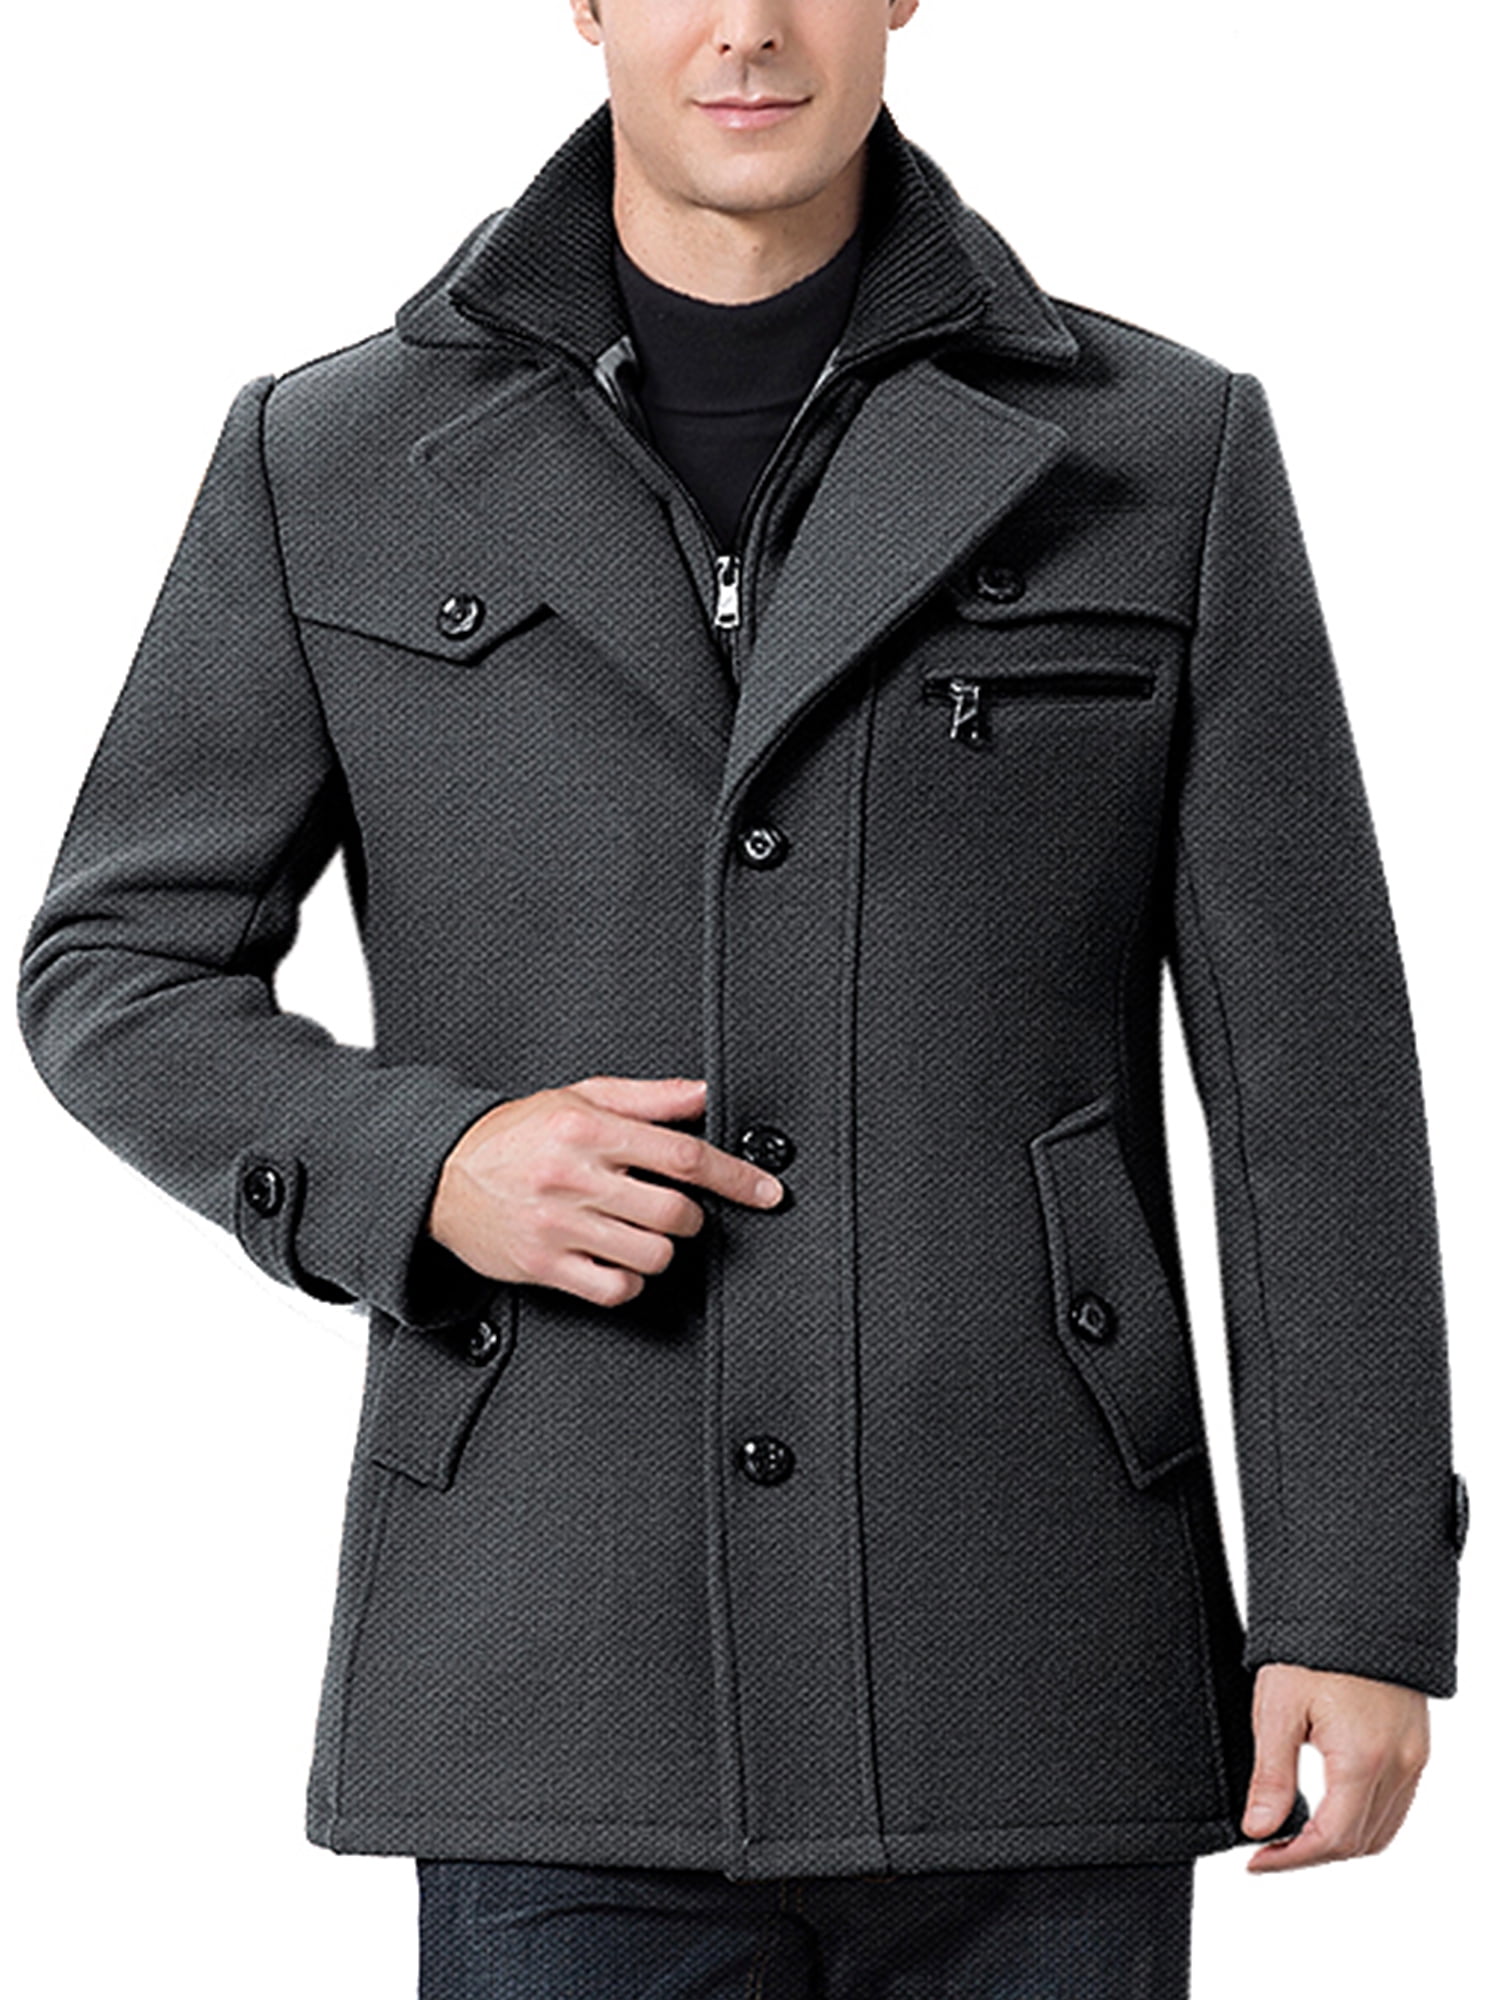 Mens Retro Lapel Vest Wool Blend Casual Slim Fit Coats Waistcoats Jackets S-4XL